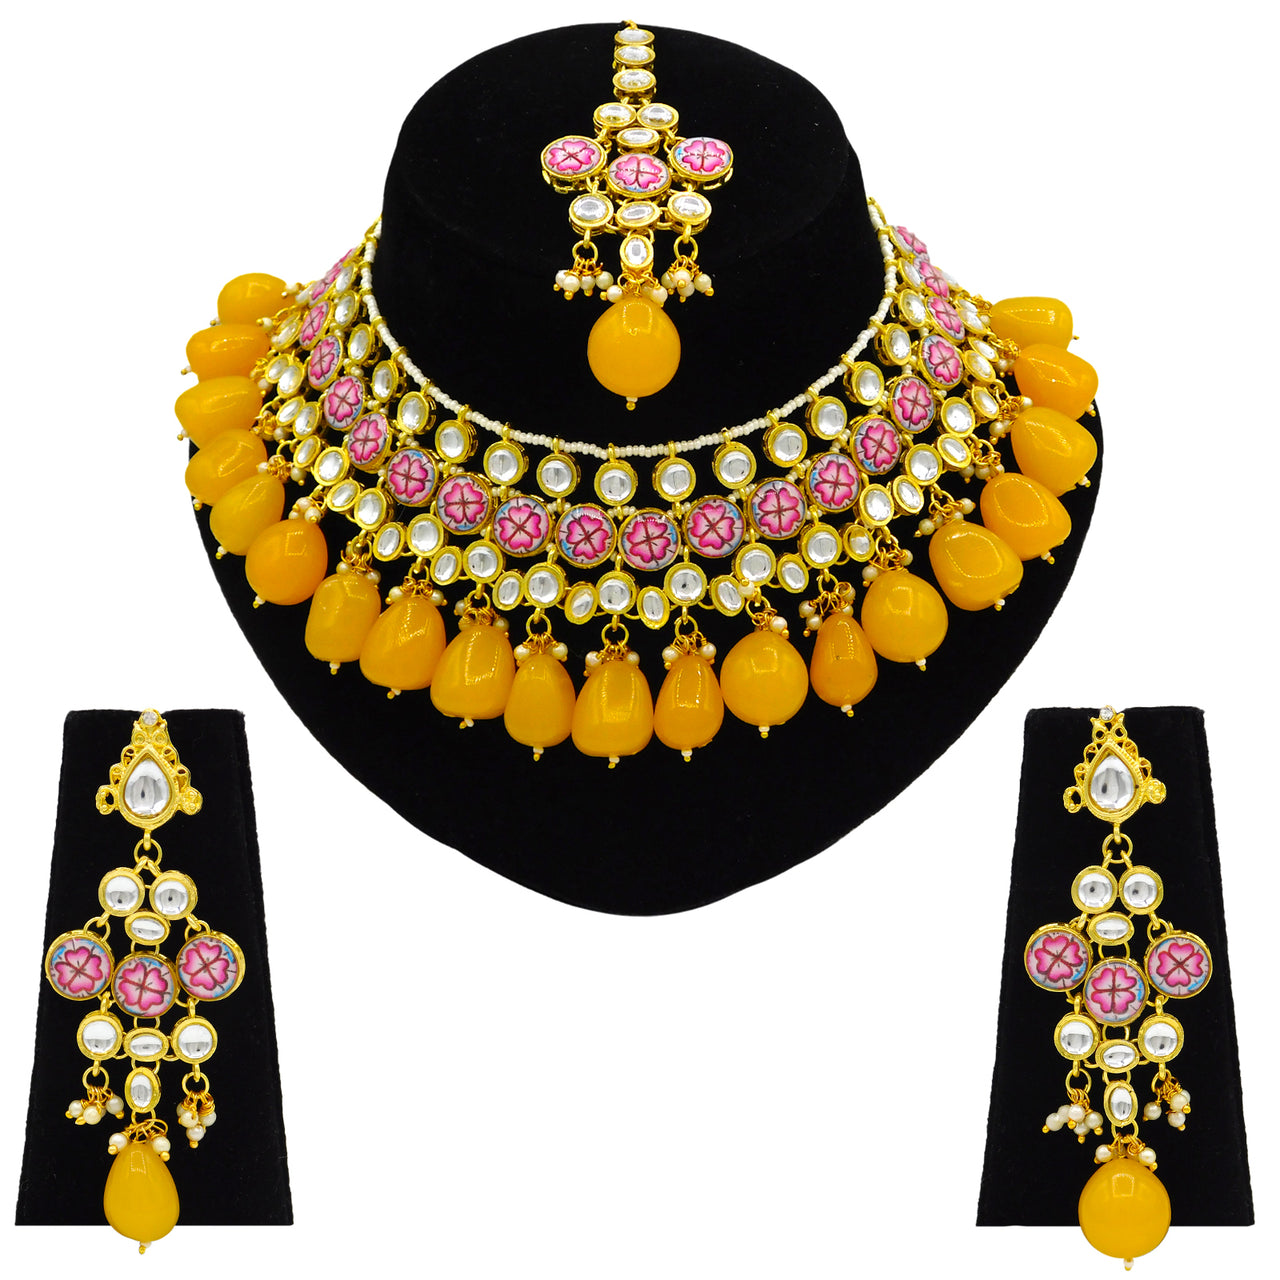 Sujwel Gold Plated Kundan Floral Design Choker Necklace Set Women (08-0438) - Sujwel